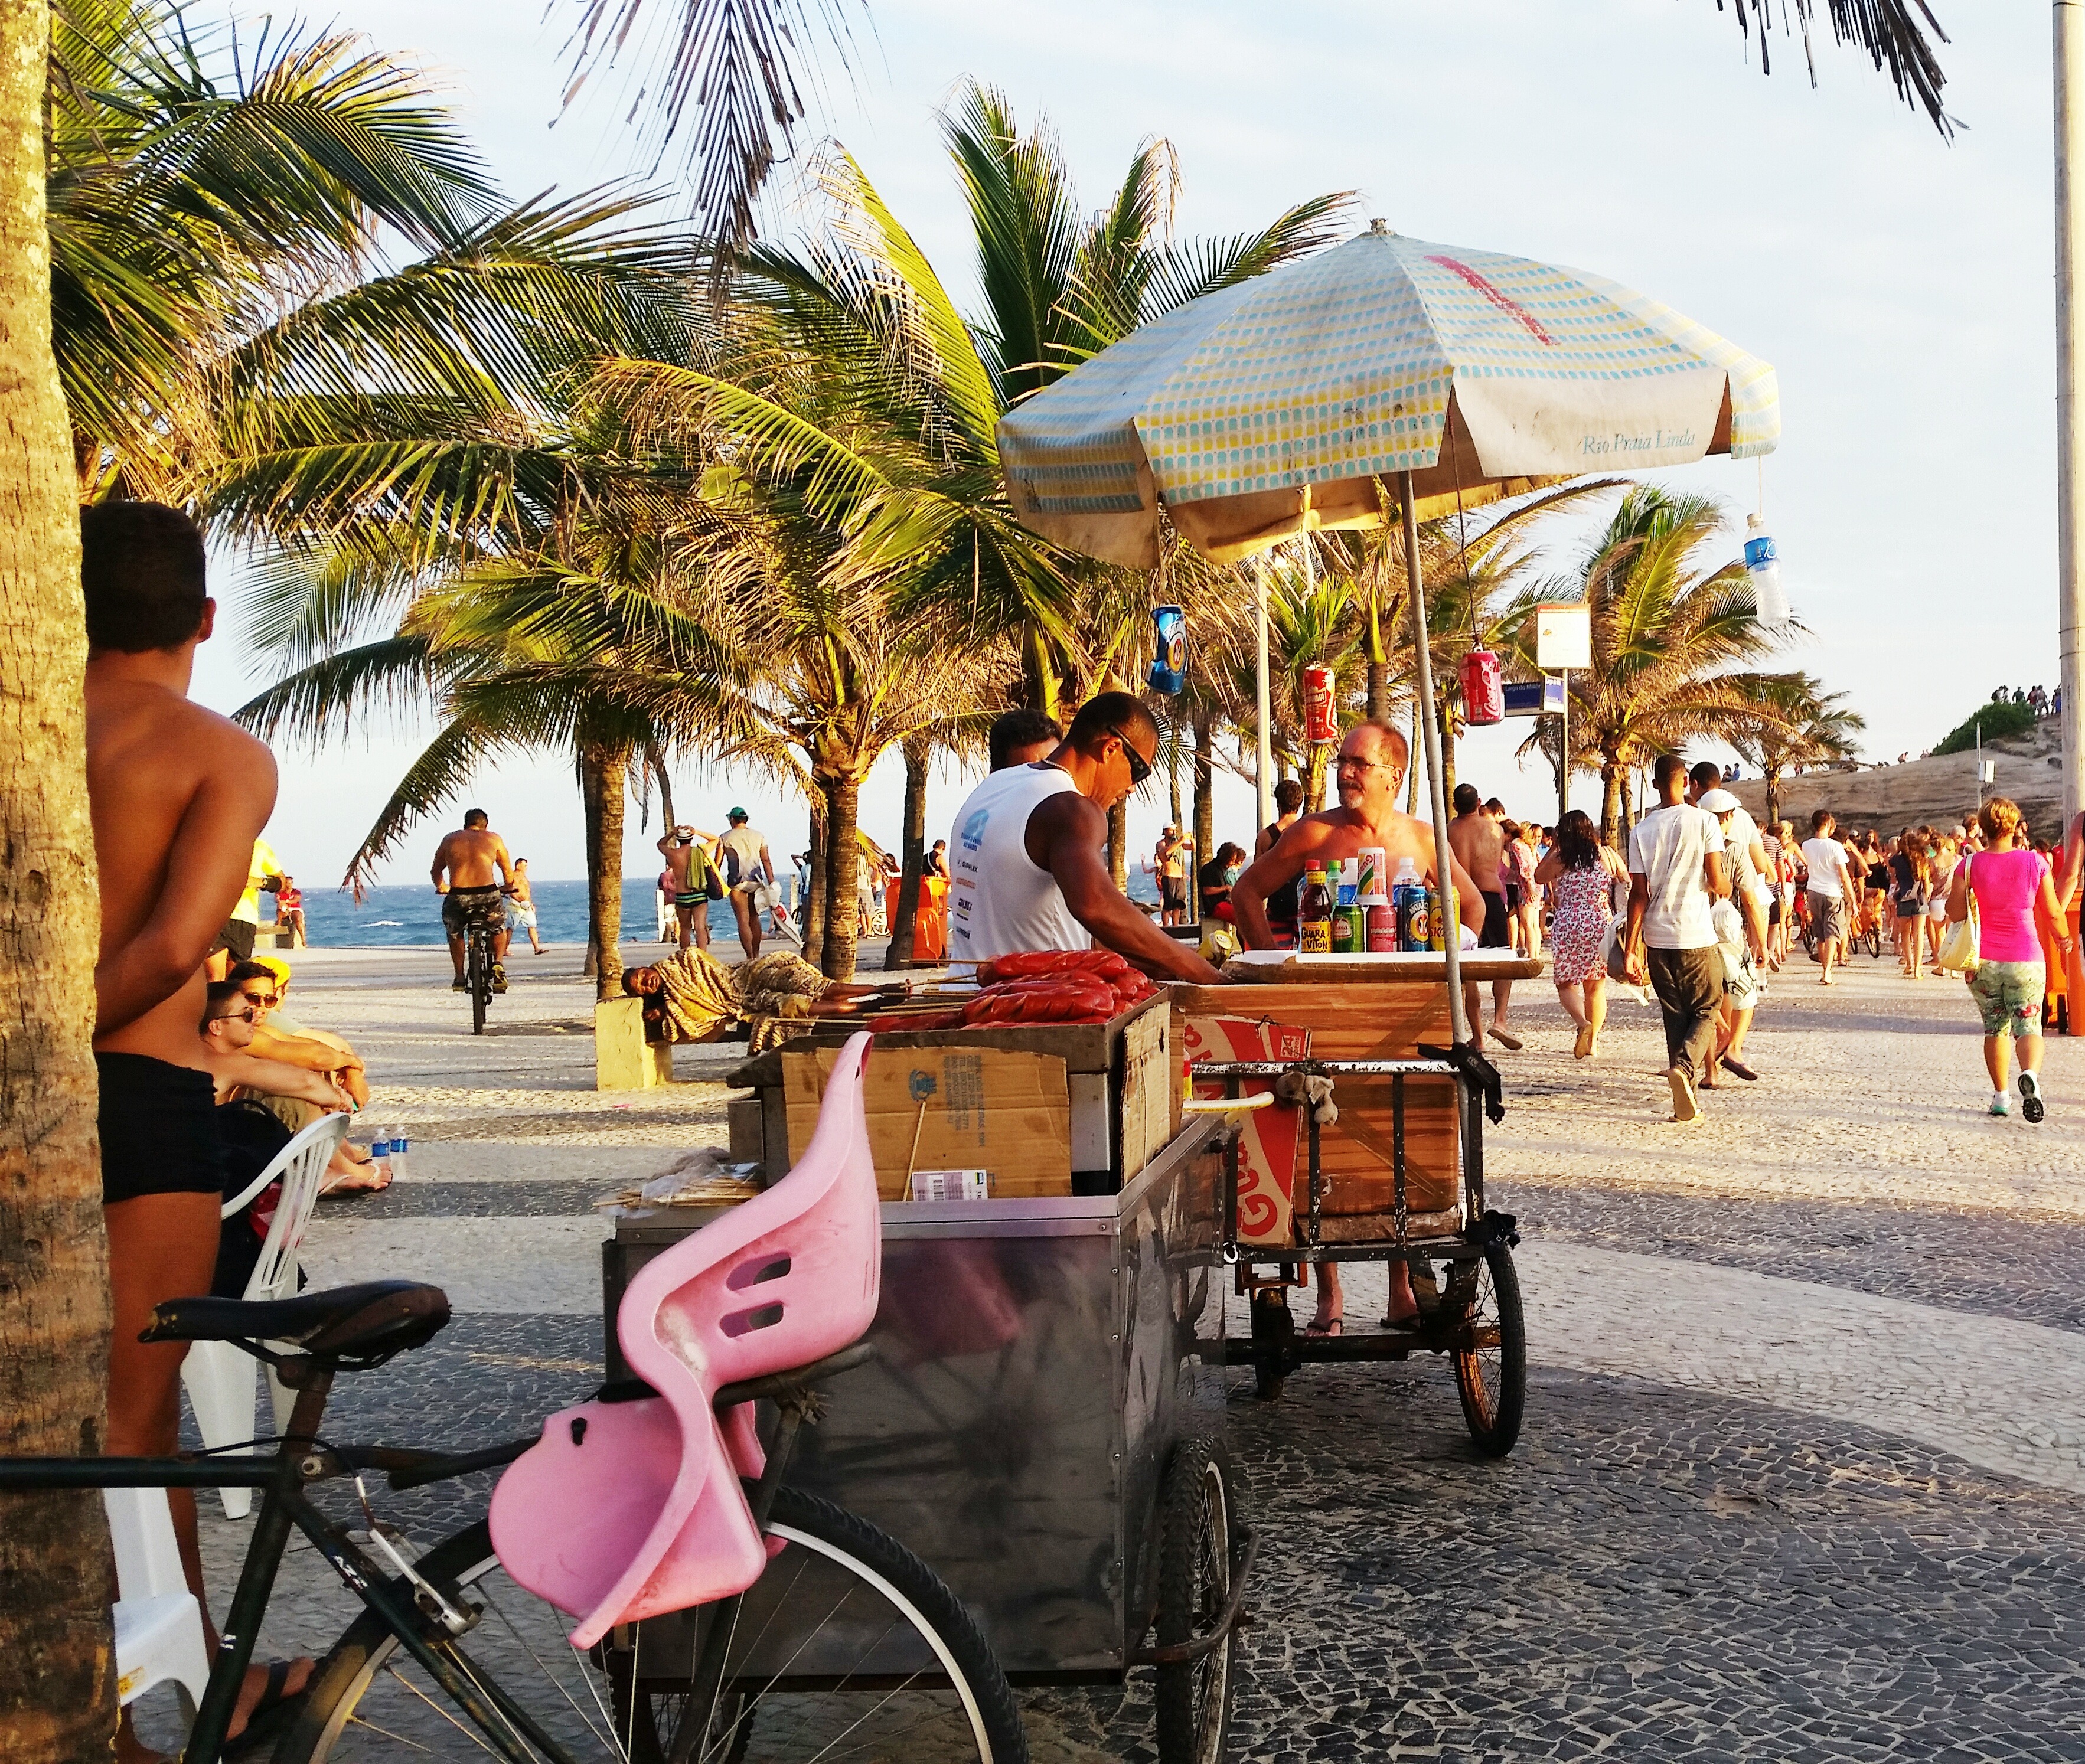 Top 7 Stunning Beaches in Rio de Janeiro You Can't Miss: Ipanema Beach/Praia de Ipanema/Arpoador